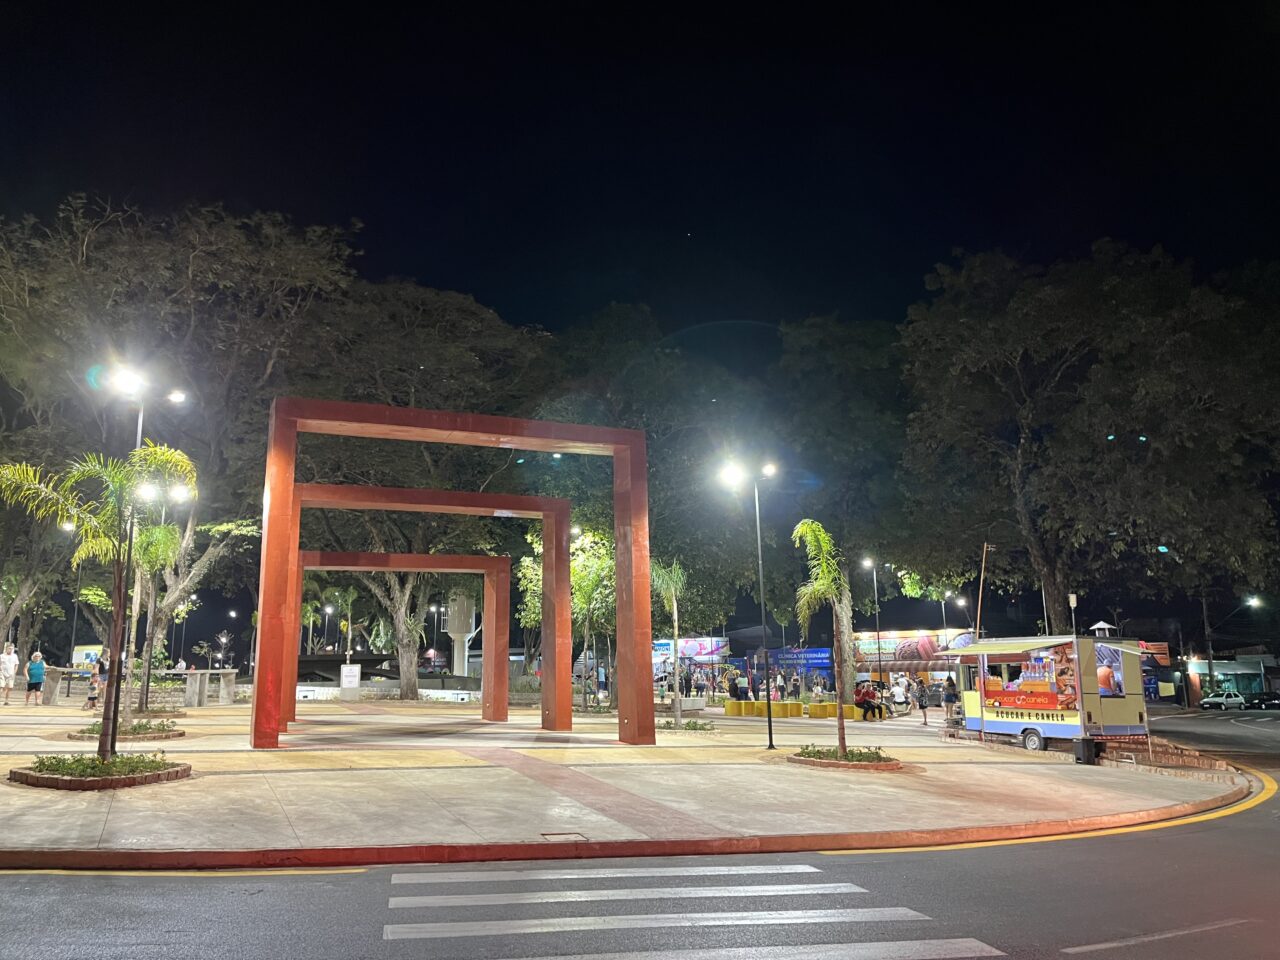 Decreto autoriza mesas e cadeiras na Praça da Buzolin